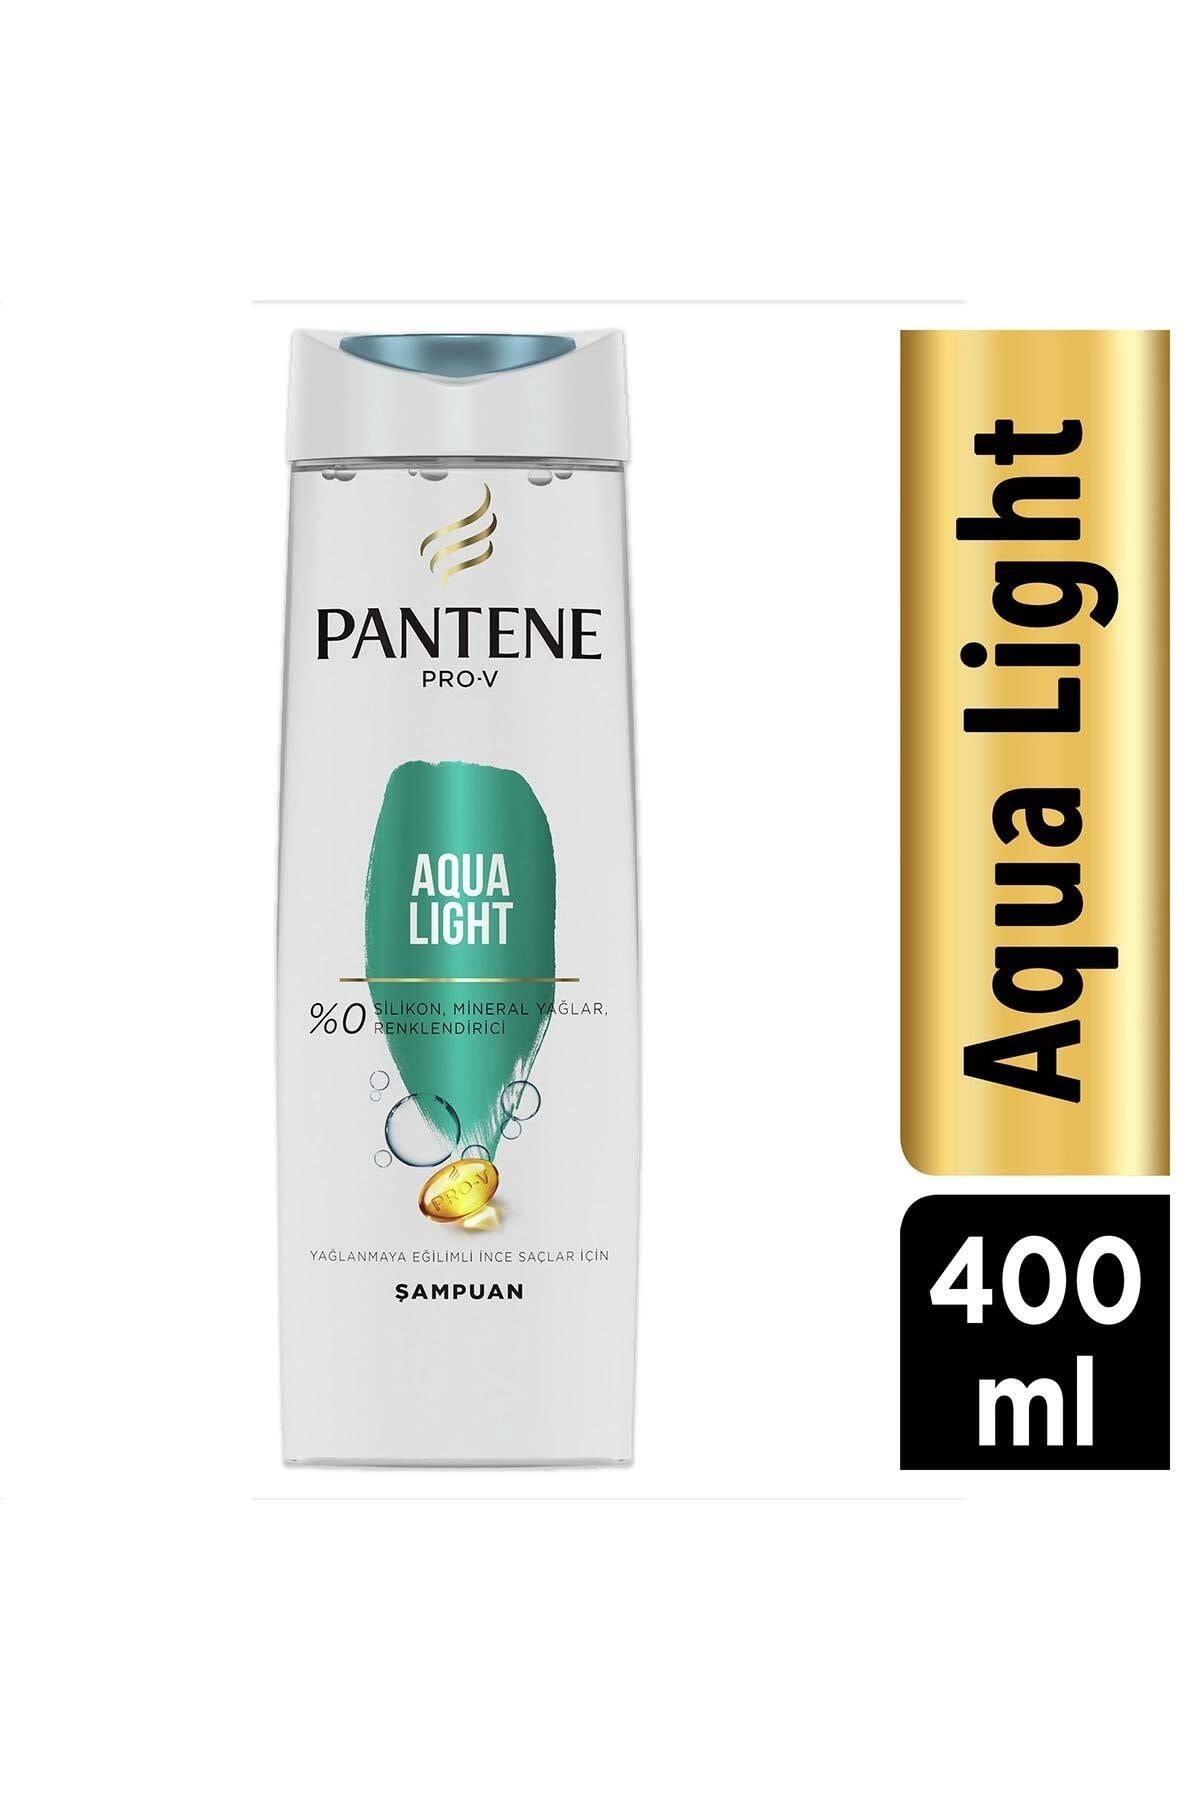 Pantene Pro-v Aqualight Şampuan Yağlı Saçlar Için 400 ml